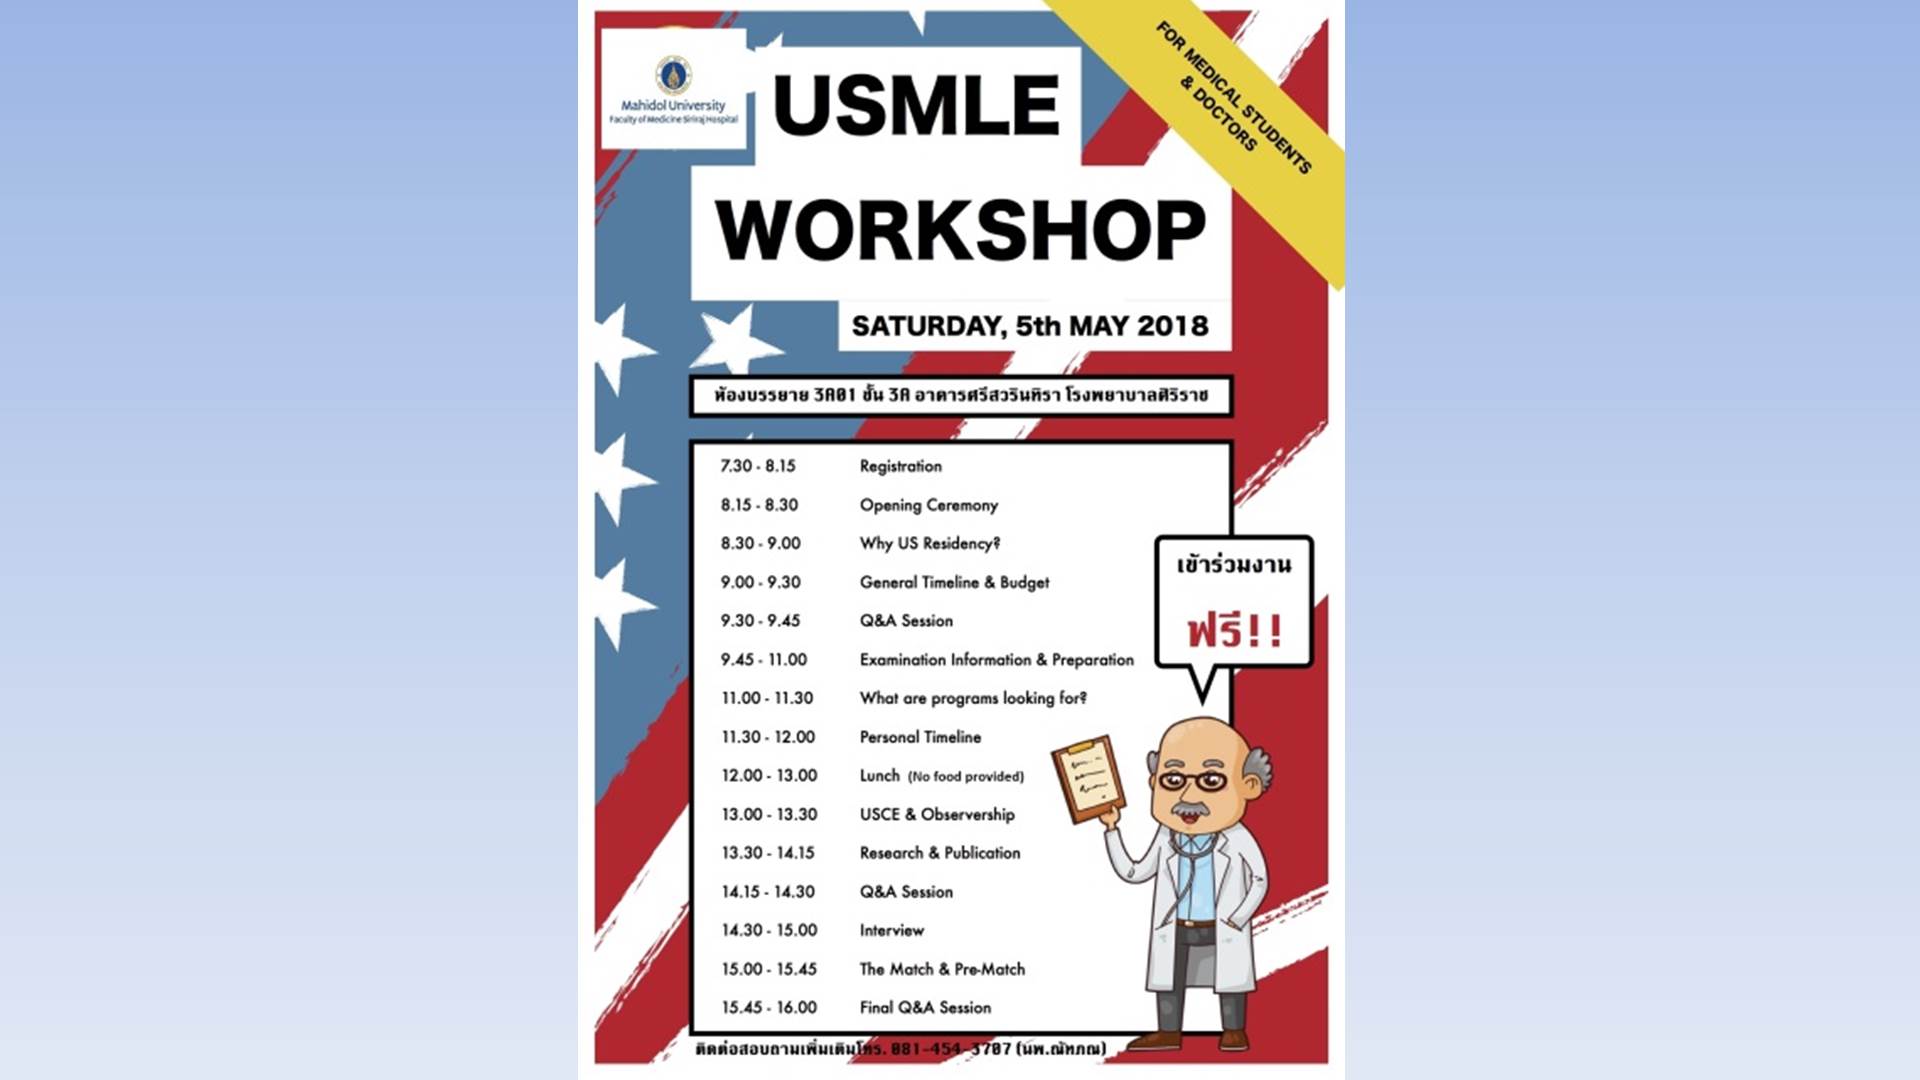 USMLE Workshop 2018